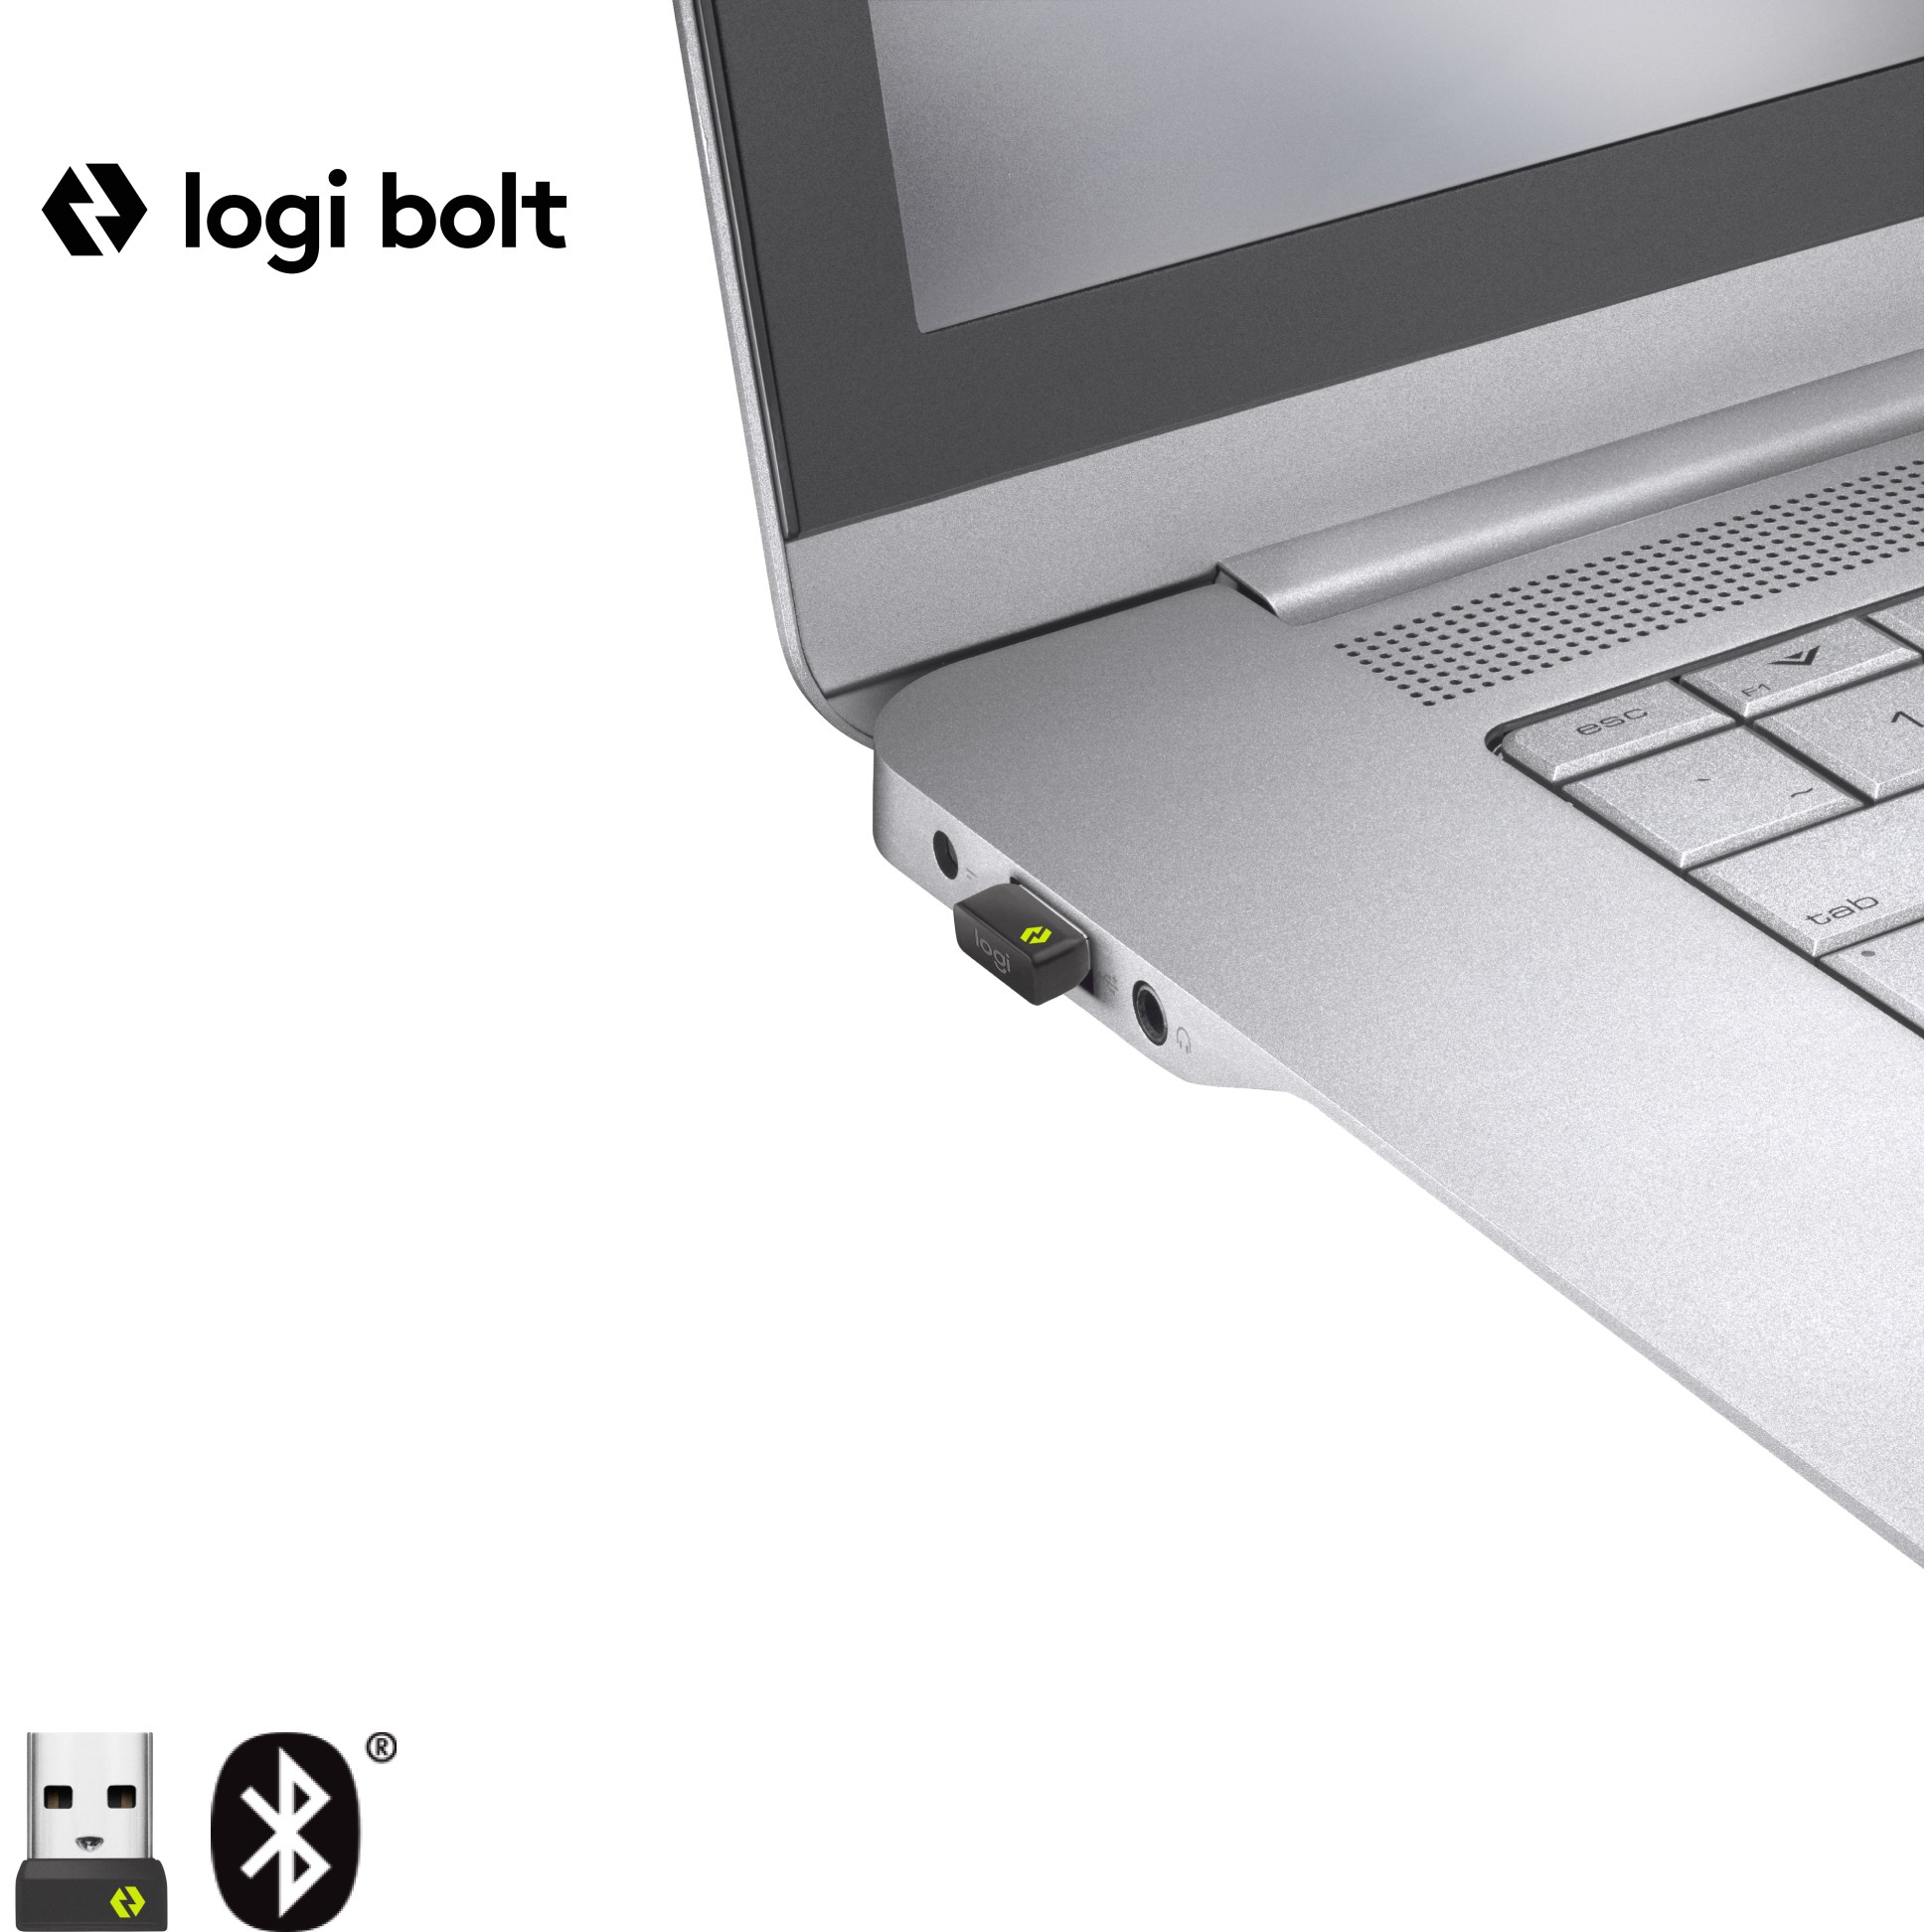 Logitech 910-006274, Mäuse & Tastaturen Mäuse, M650  (BILD2)